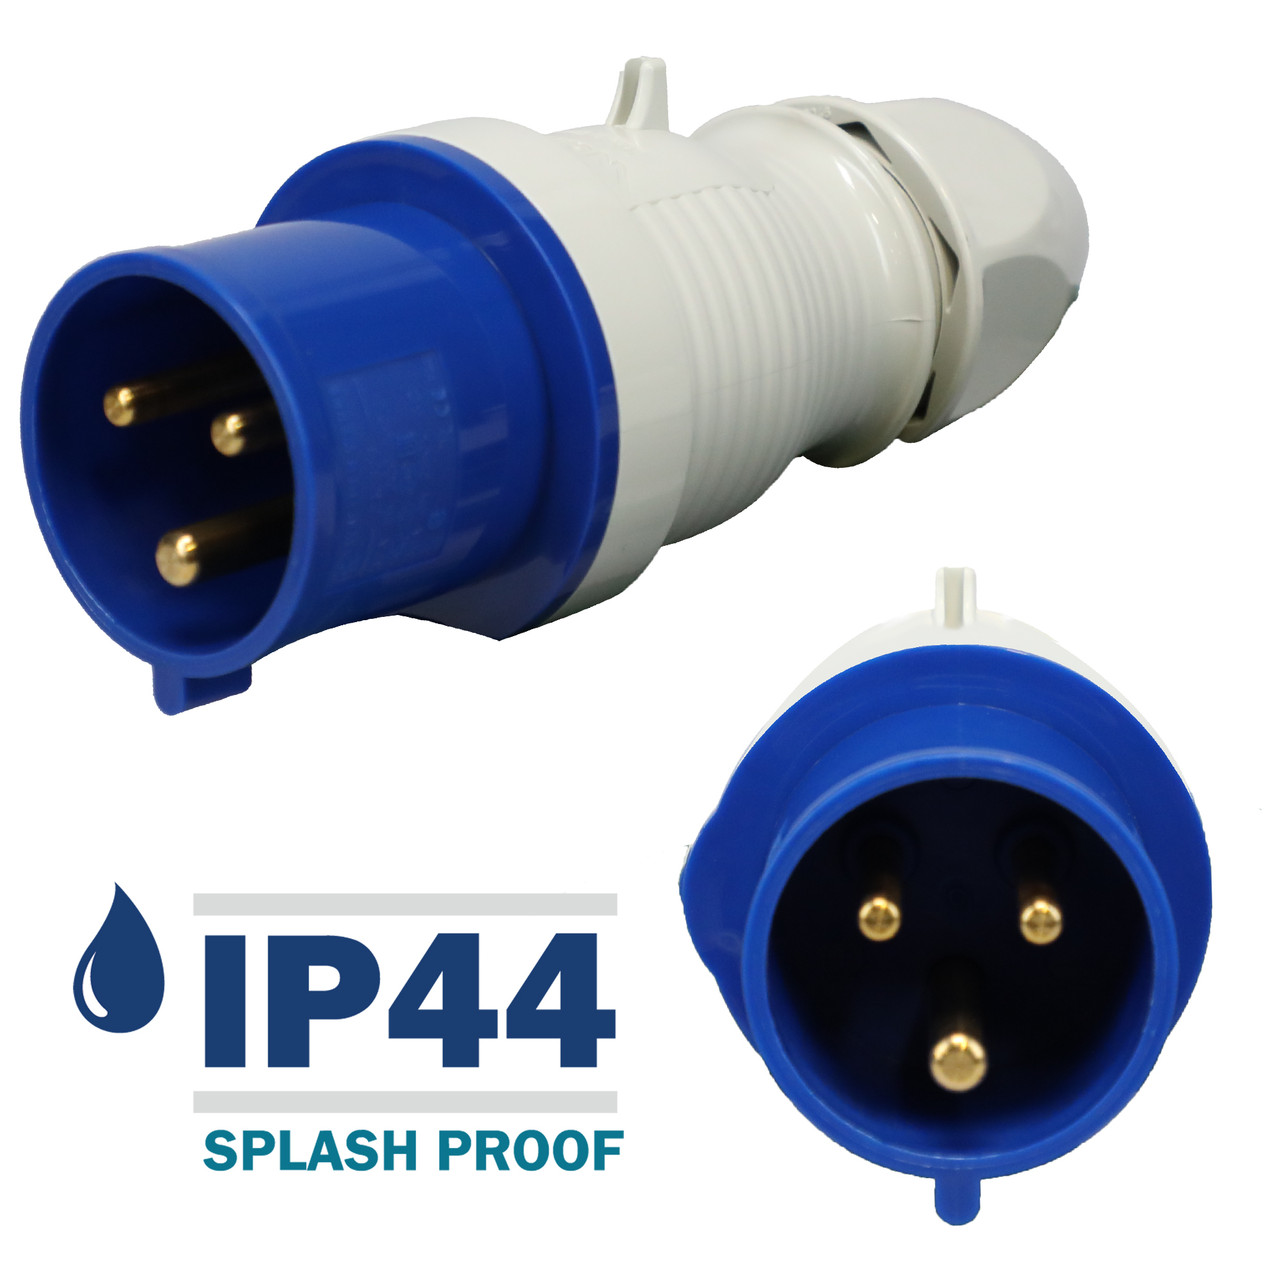 230306 Plug carries an environmental rating of IP44 Splashproof